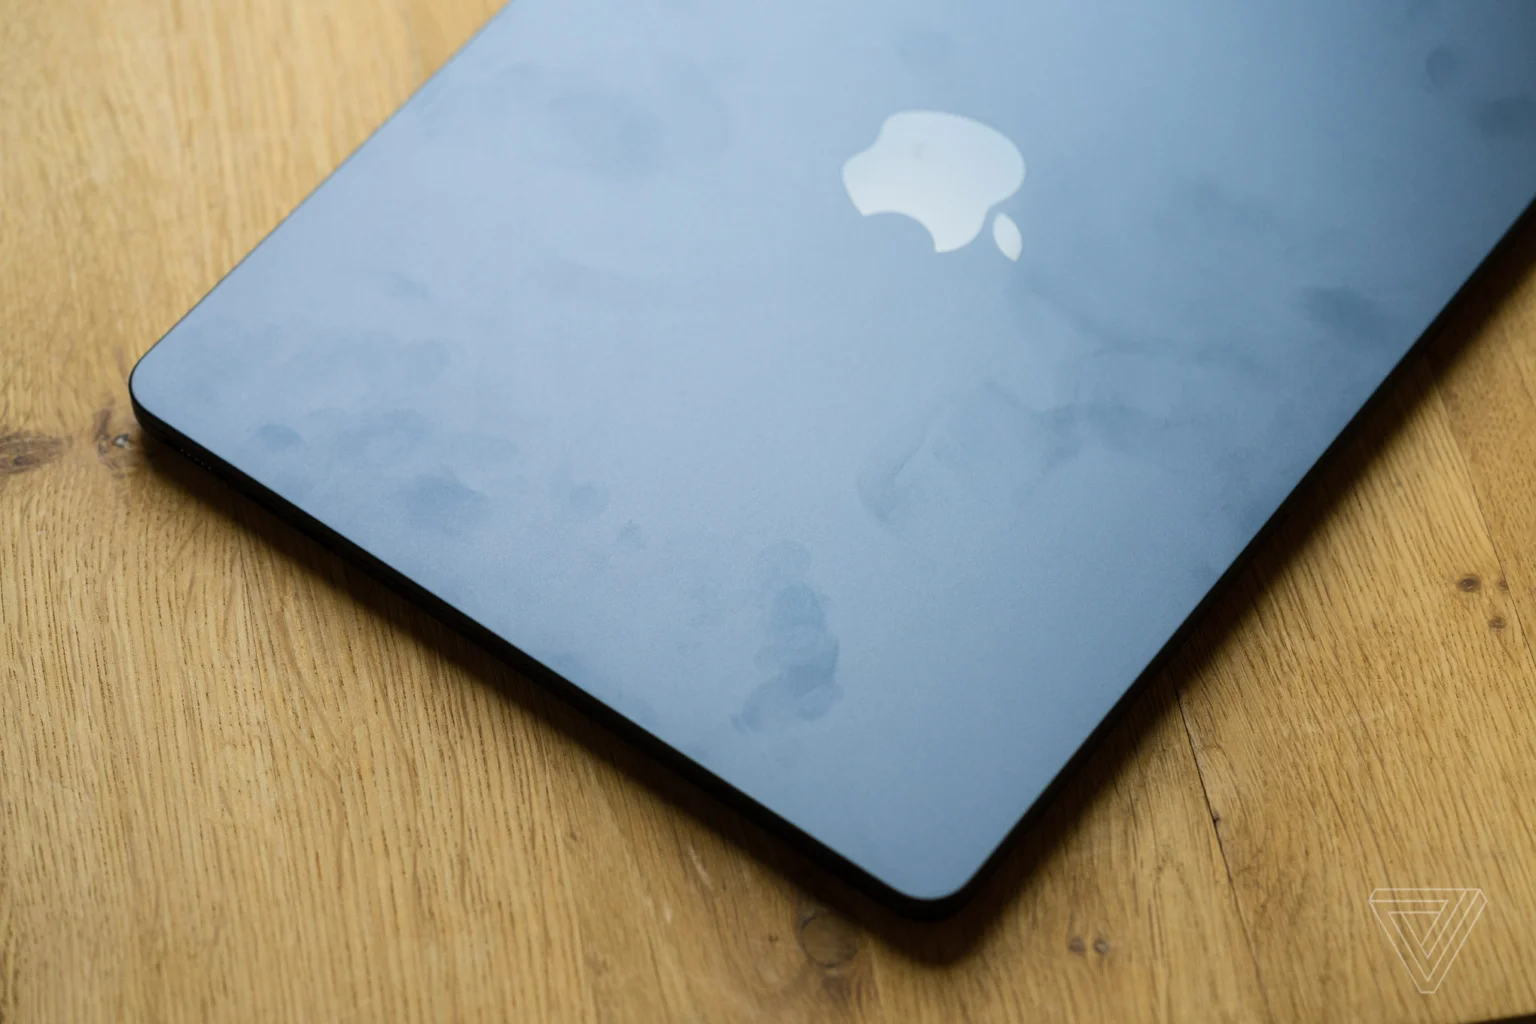 Новый MacBook будет более приветливым к пользователям